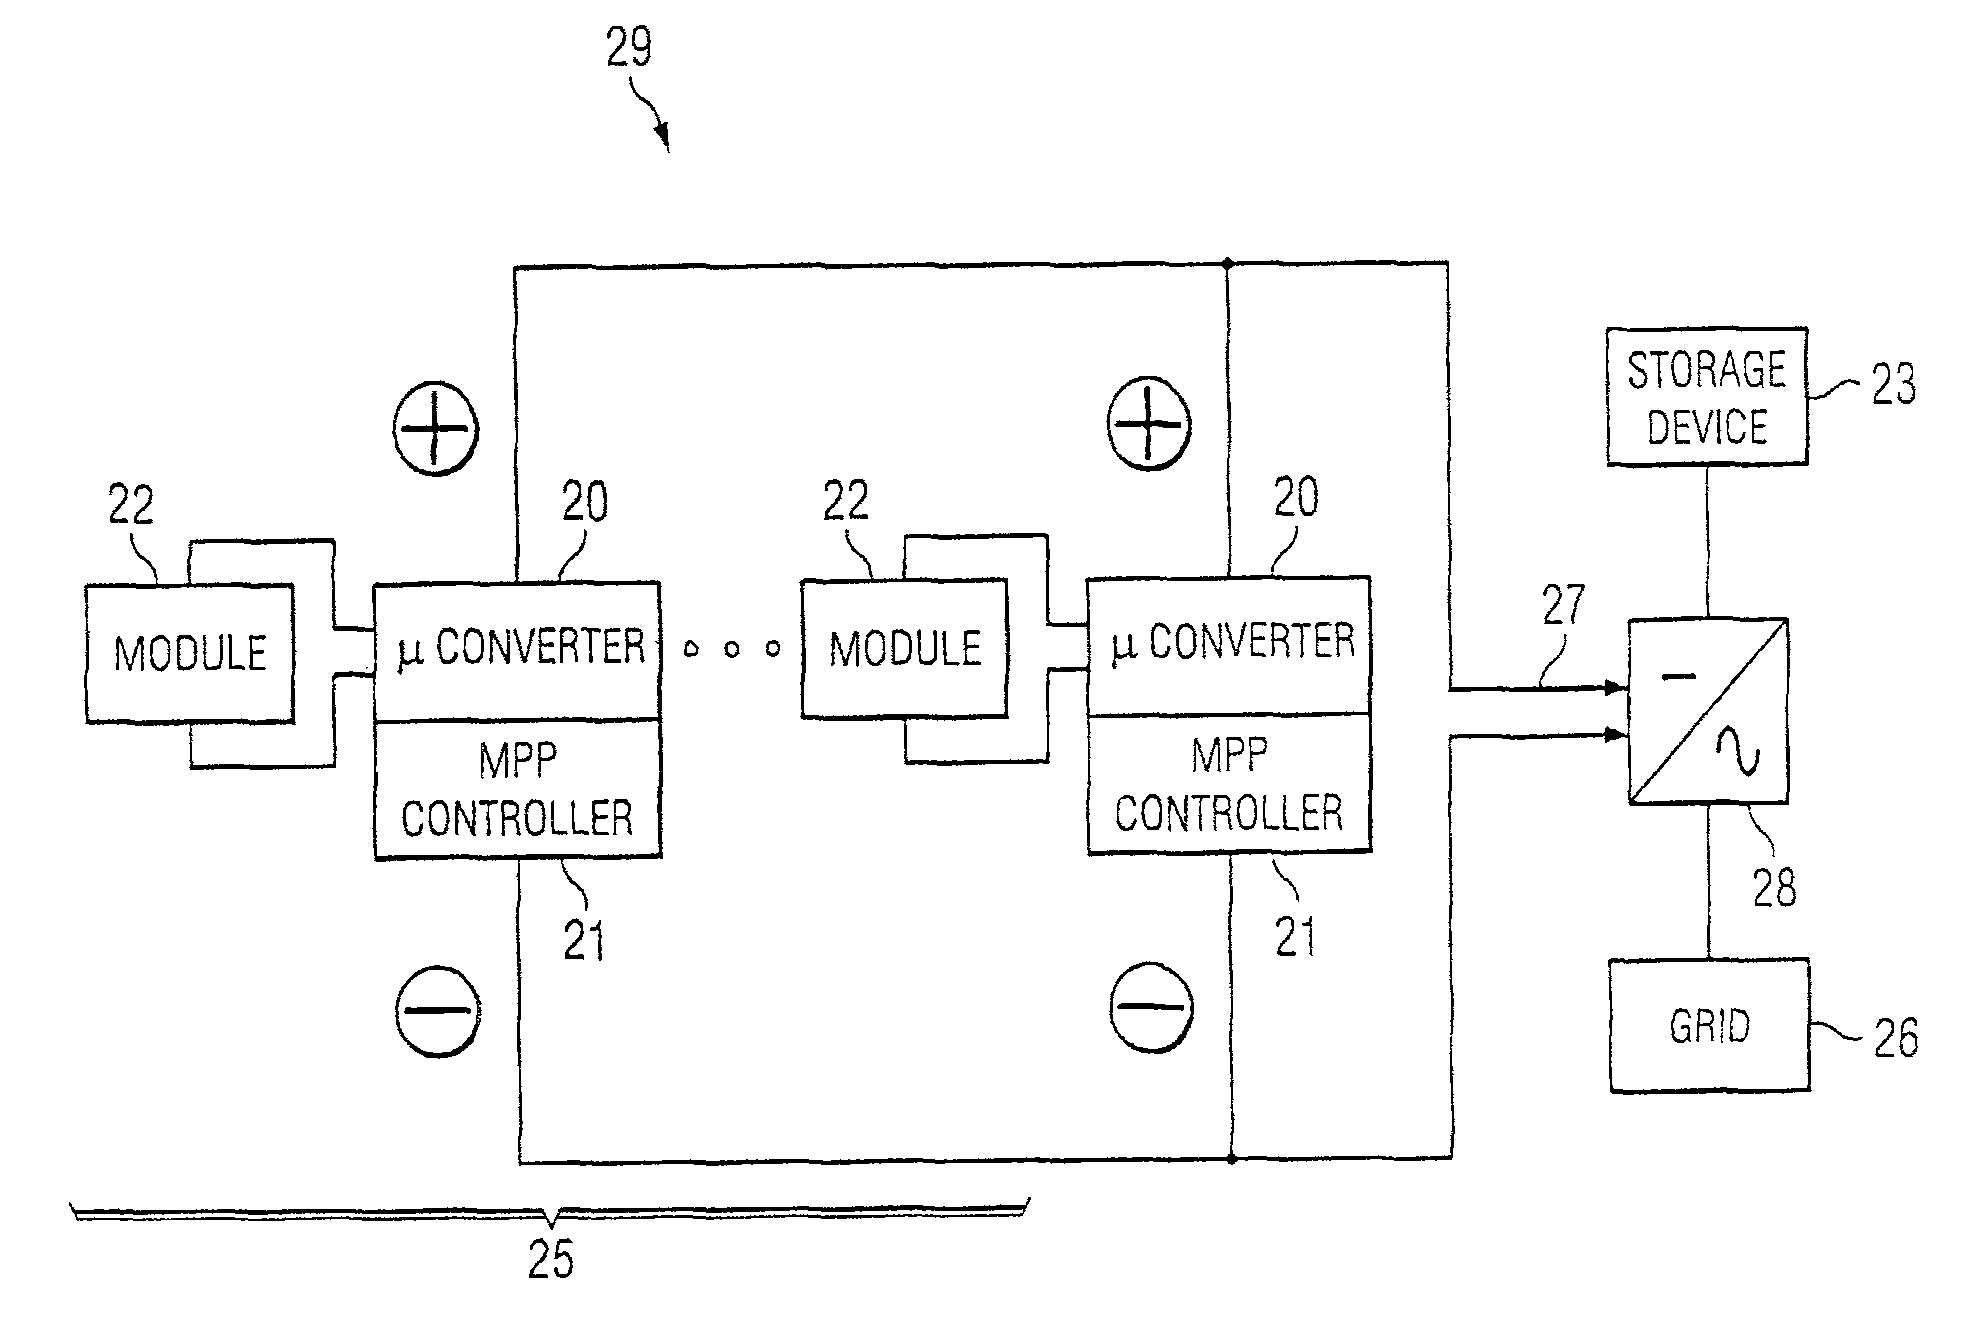 Photovoltaic DC/DC micro-converter